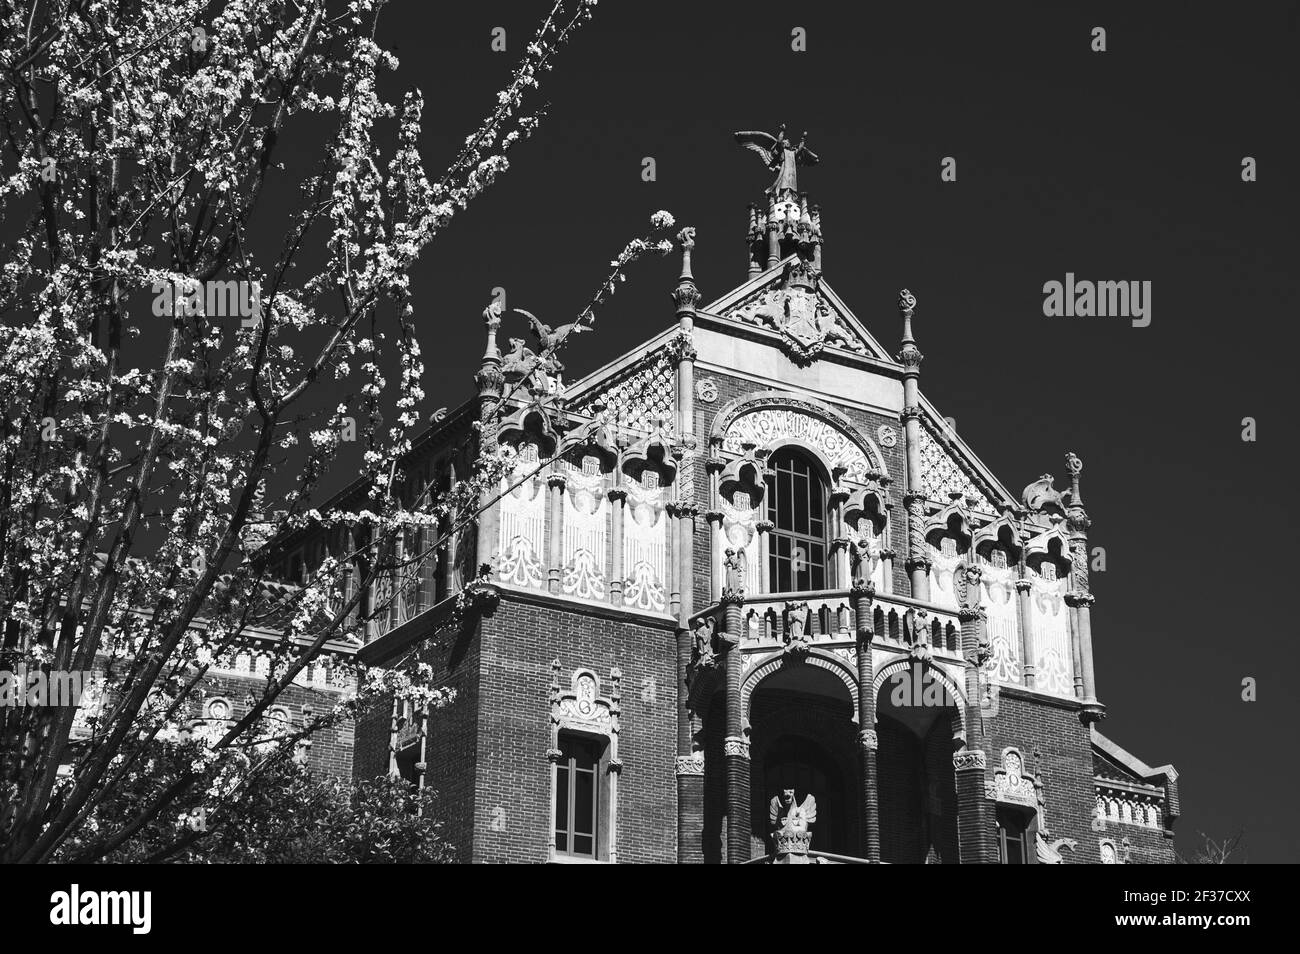 Barcelone, Catalogne, Espagne. Déplacement au printemps. Hôpital de Sant Pau, célèbre monument moderniste. Arbre en fleurs. Photo historique noir blanc Banque D'Images